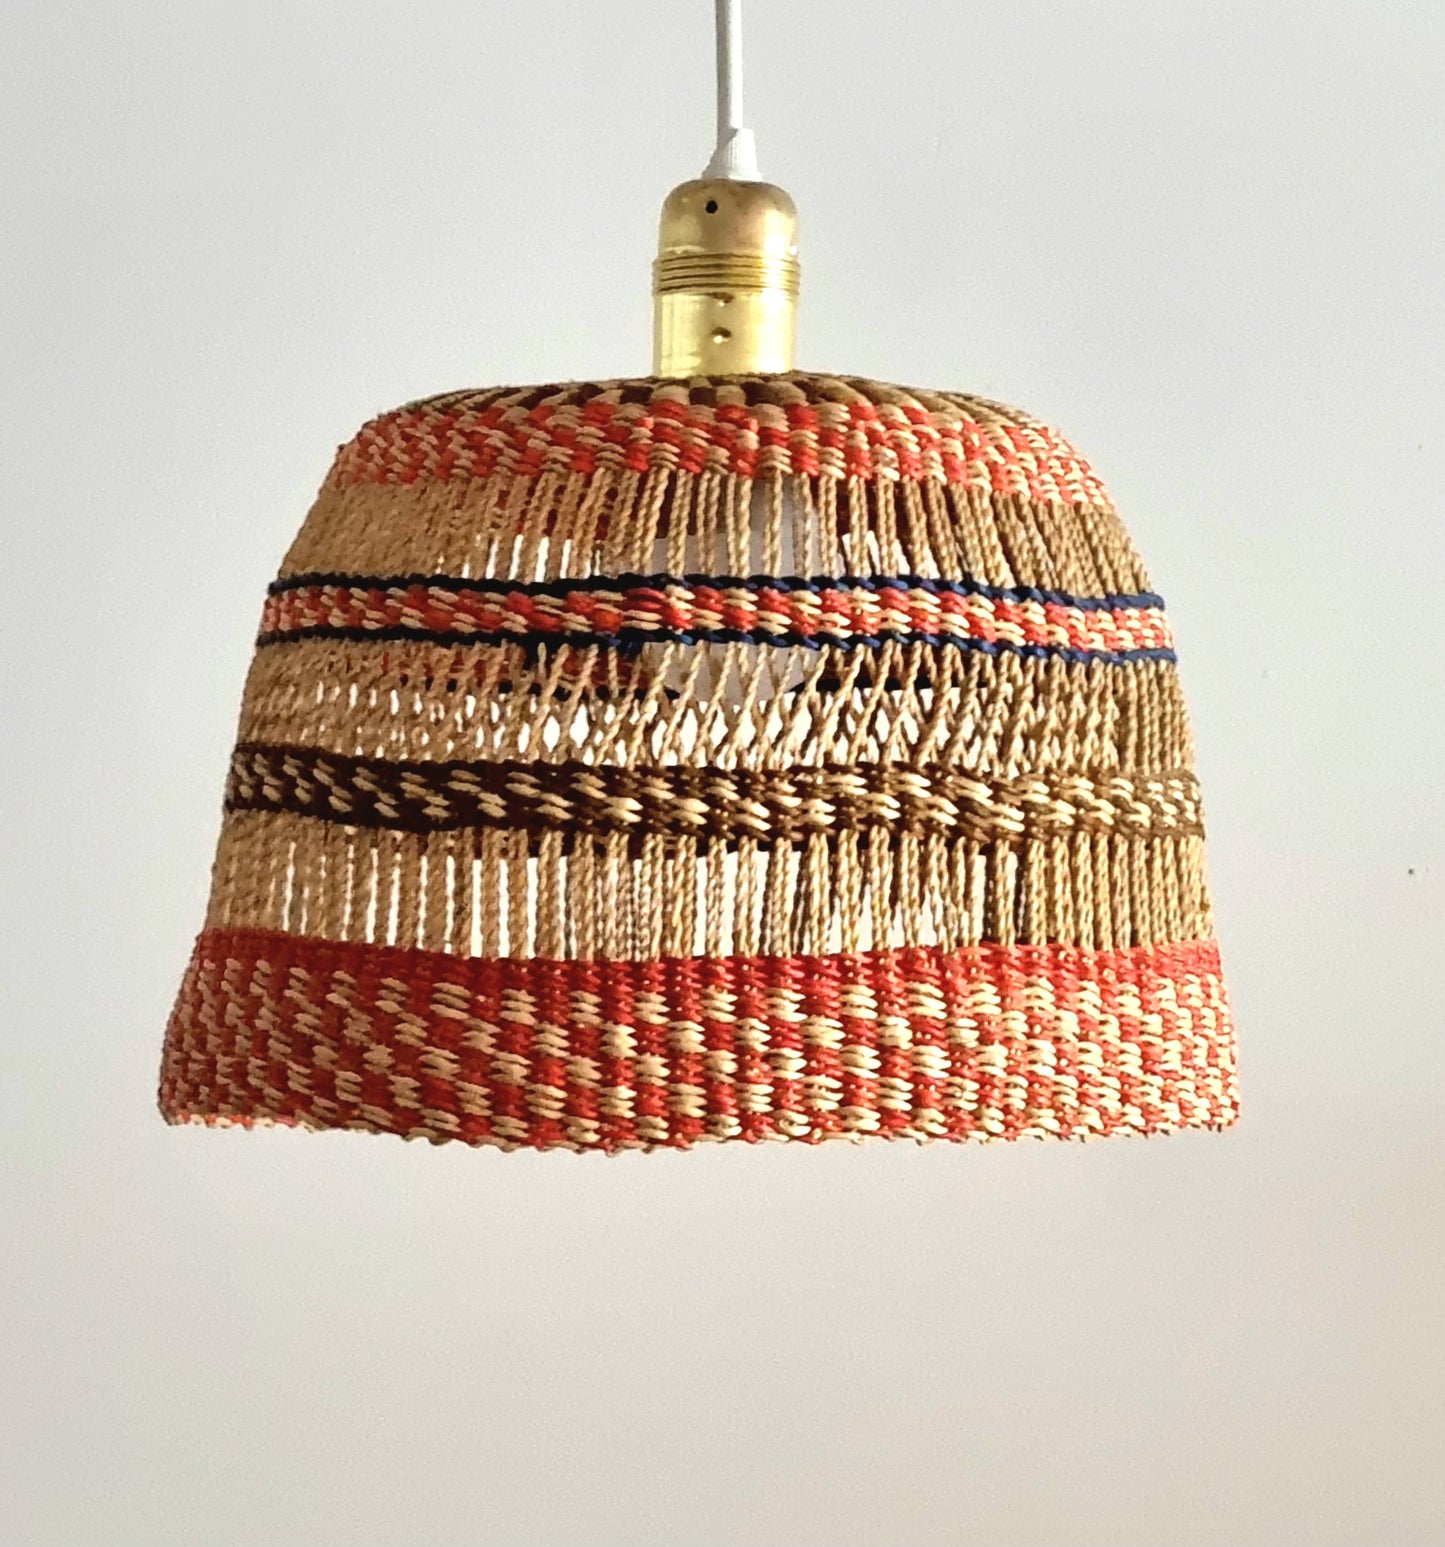 Hand made lampshades